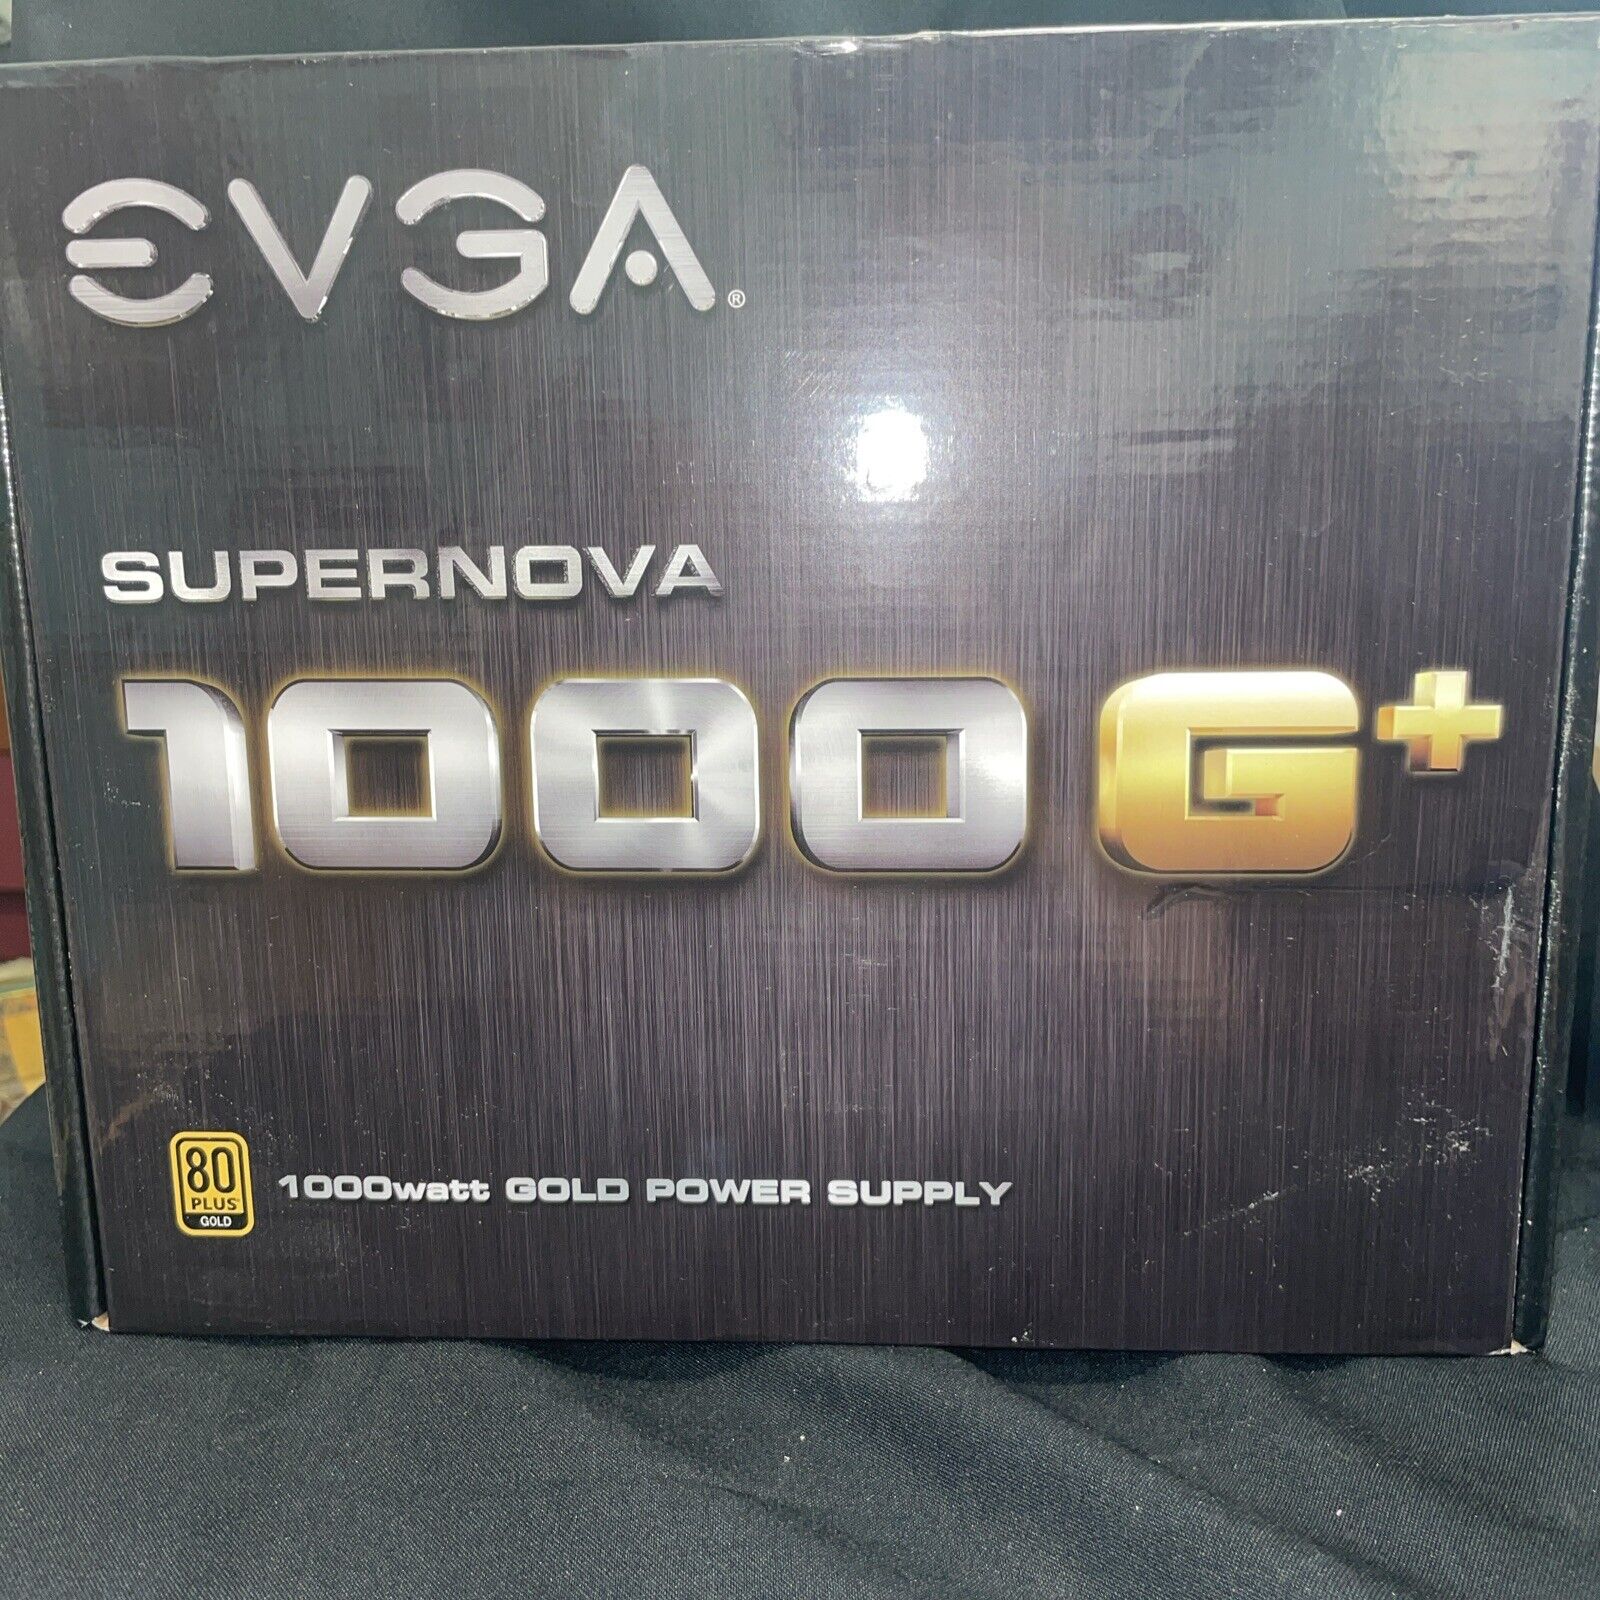 EVGA SuperNOVA 1000 G+, 80 Plus Gold 1000W, Fully Modular, FDB Fan, 10 Year Warr